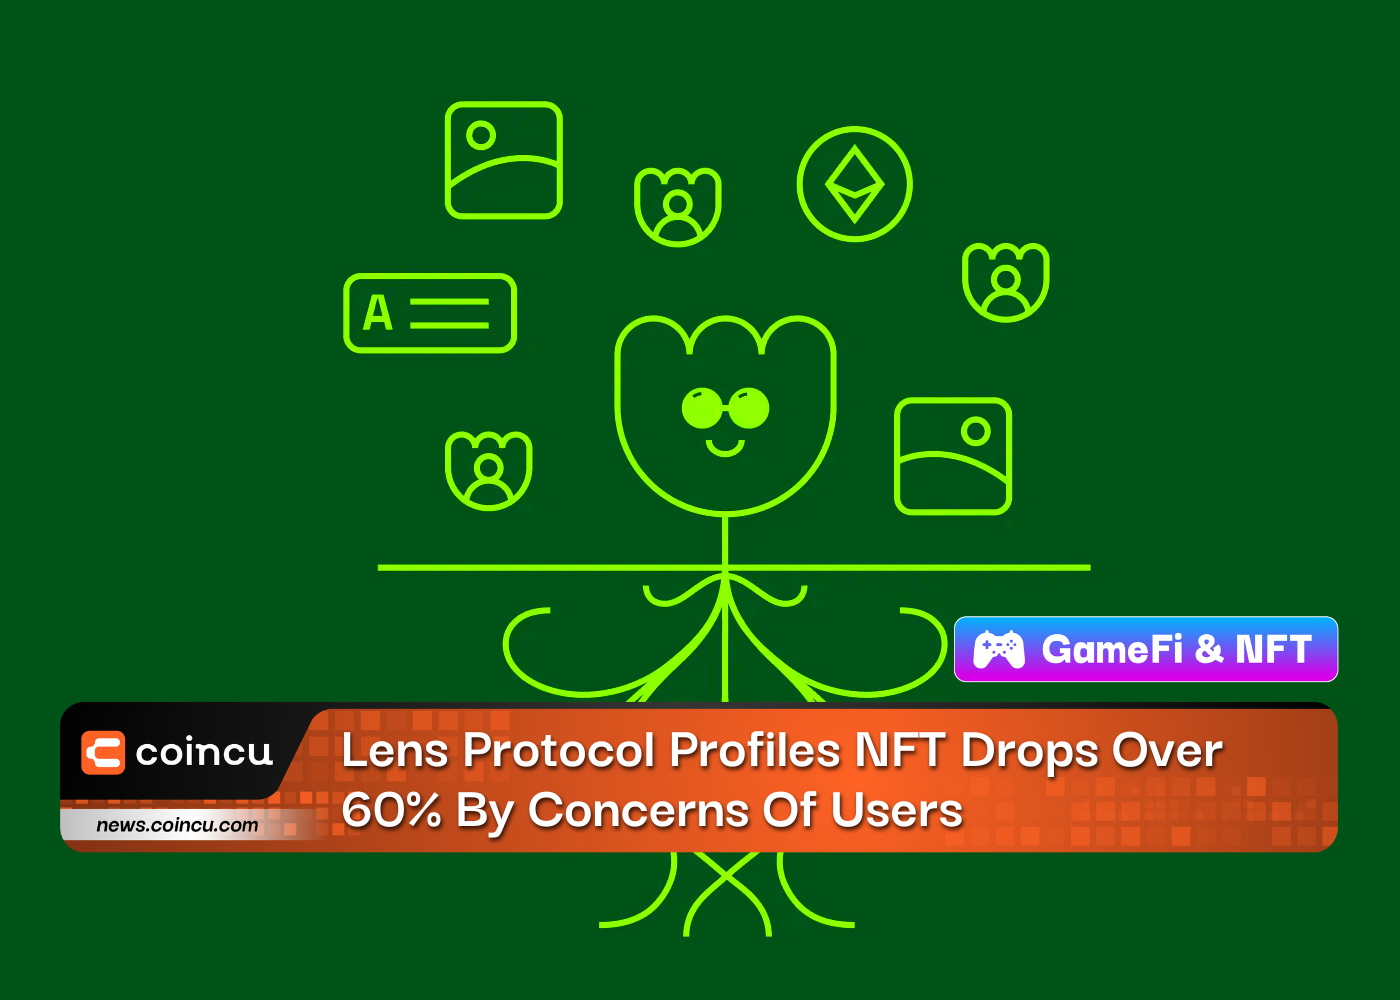 Lens Protocol Profiles NFT sinkt aufgrund von Bedenken der Benutzer um über 60 %